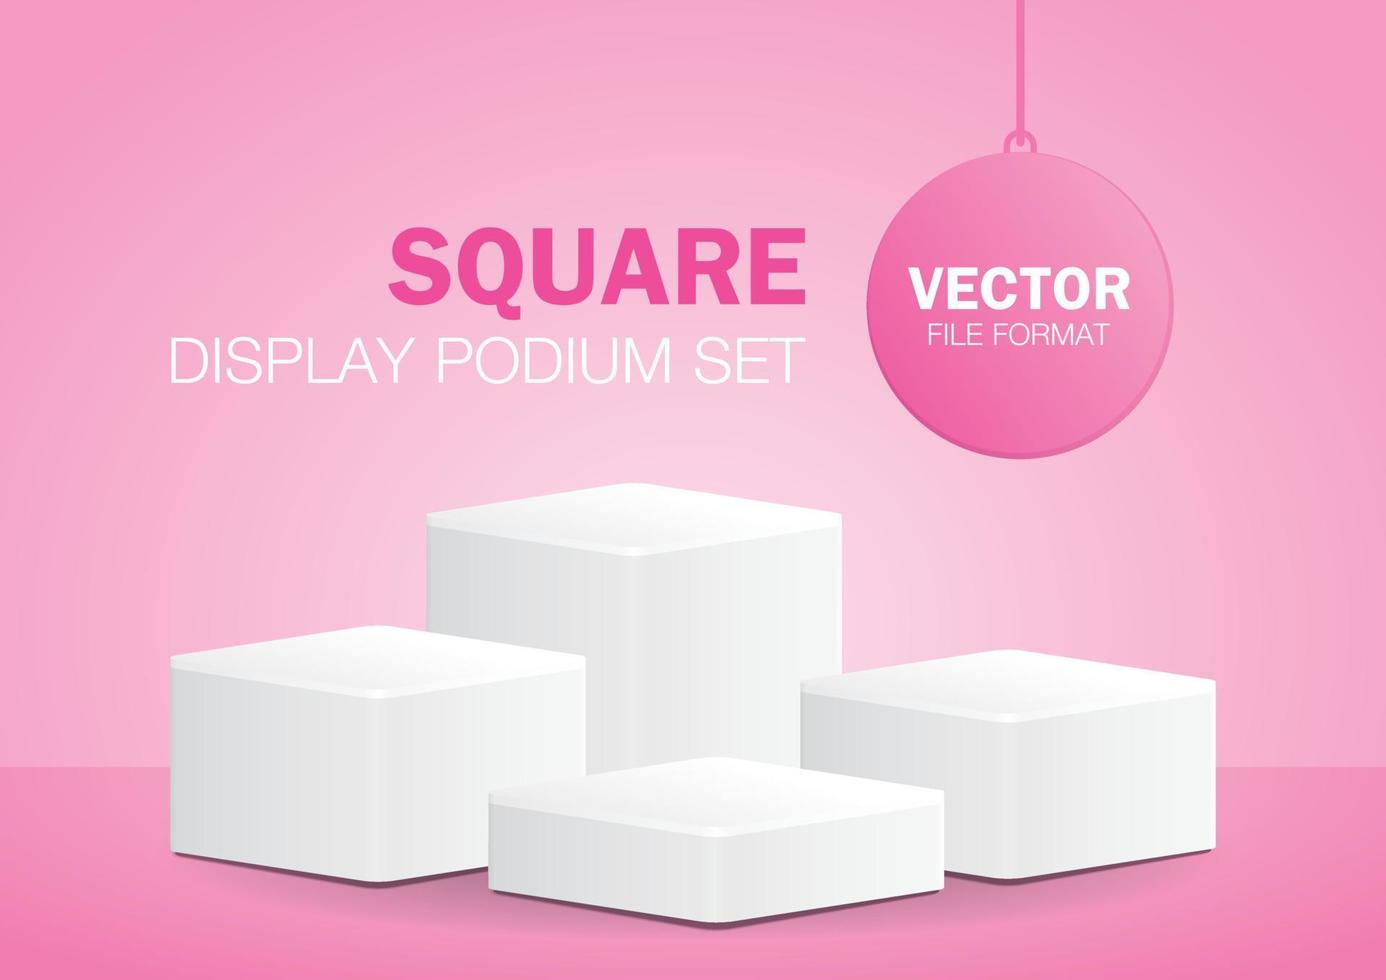 minimale witte vierkante productpodium set 3d illustratie vector op pastel roze achtergrond voor het plaatsen van uw object